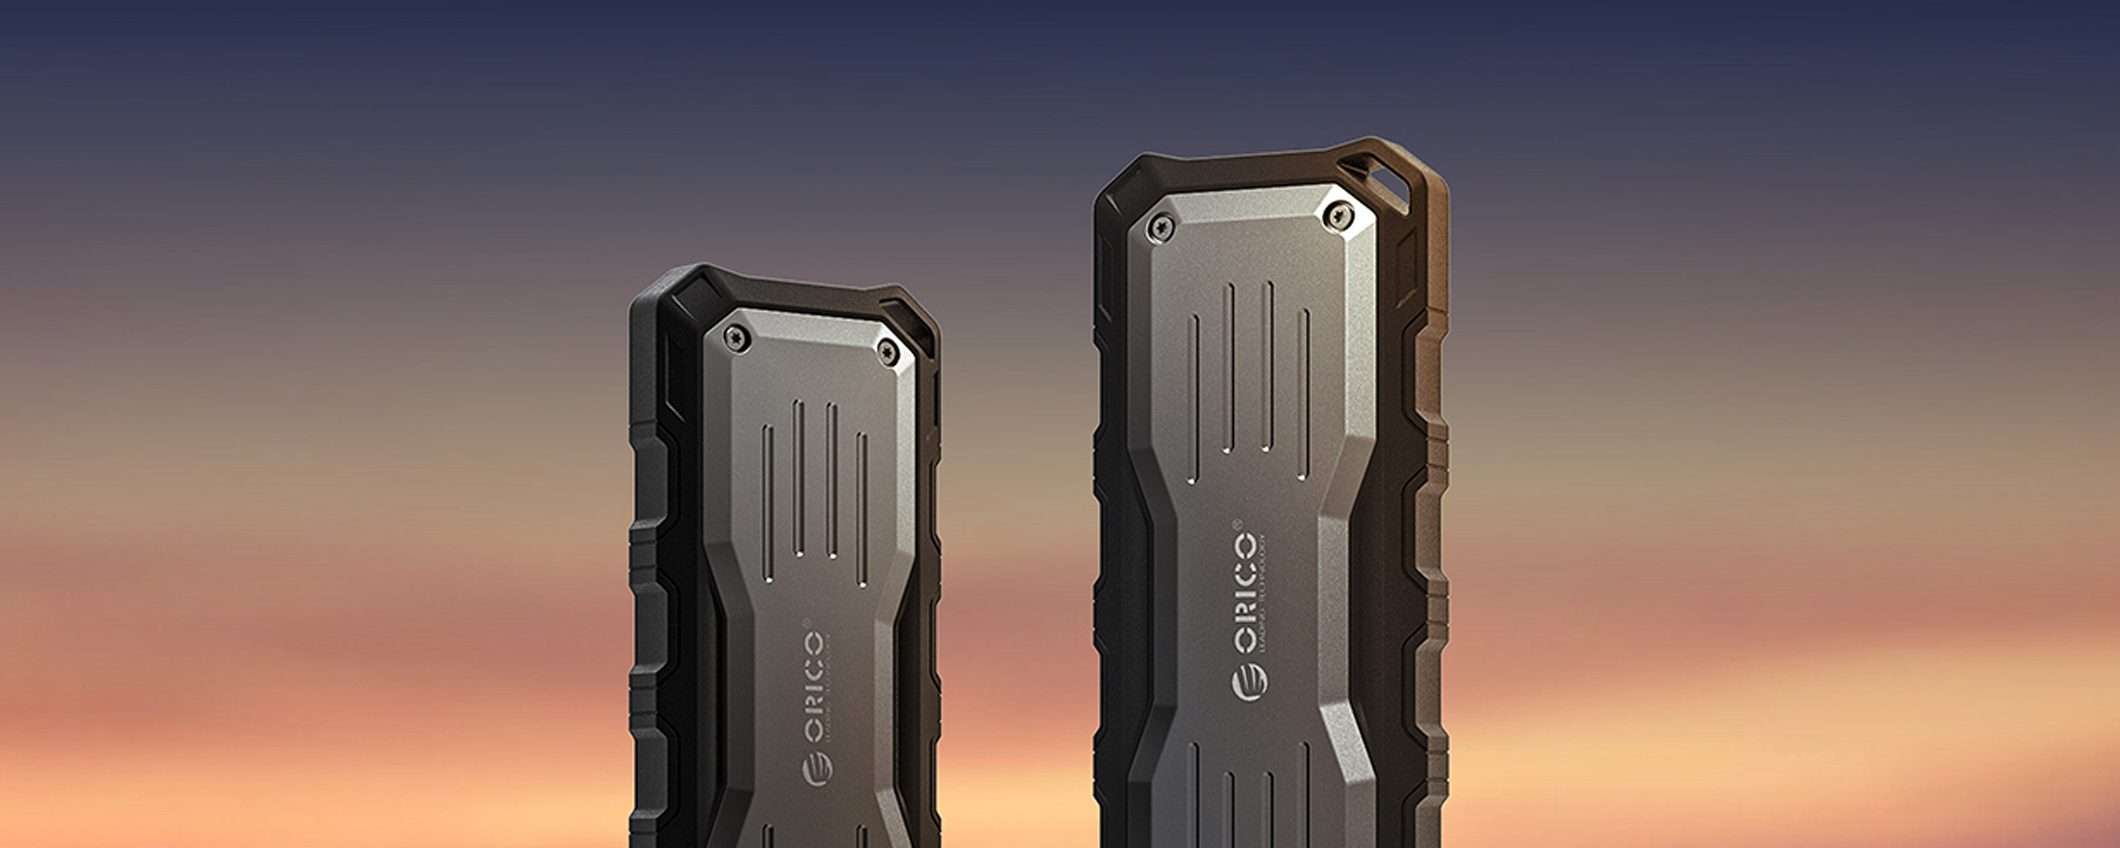 SSD portatile da 1 TB in SCONTO: ORICO O20 è indistruttibile